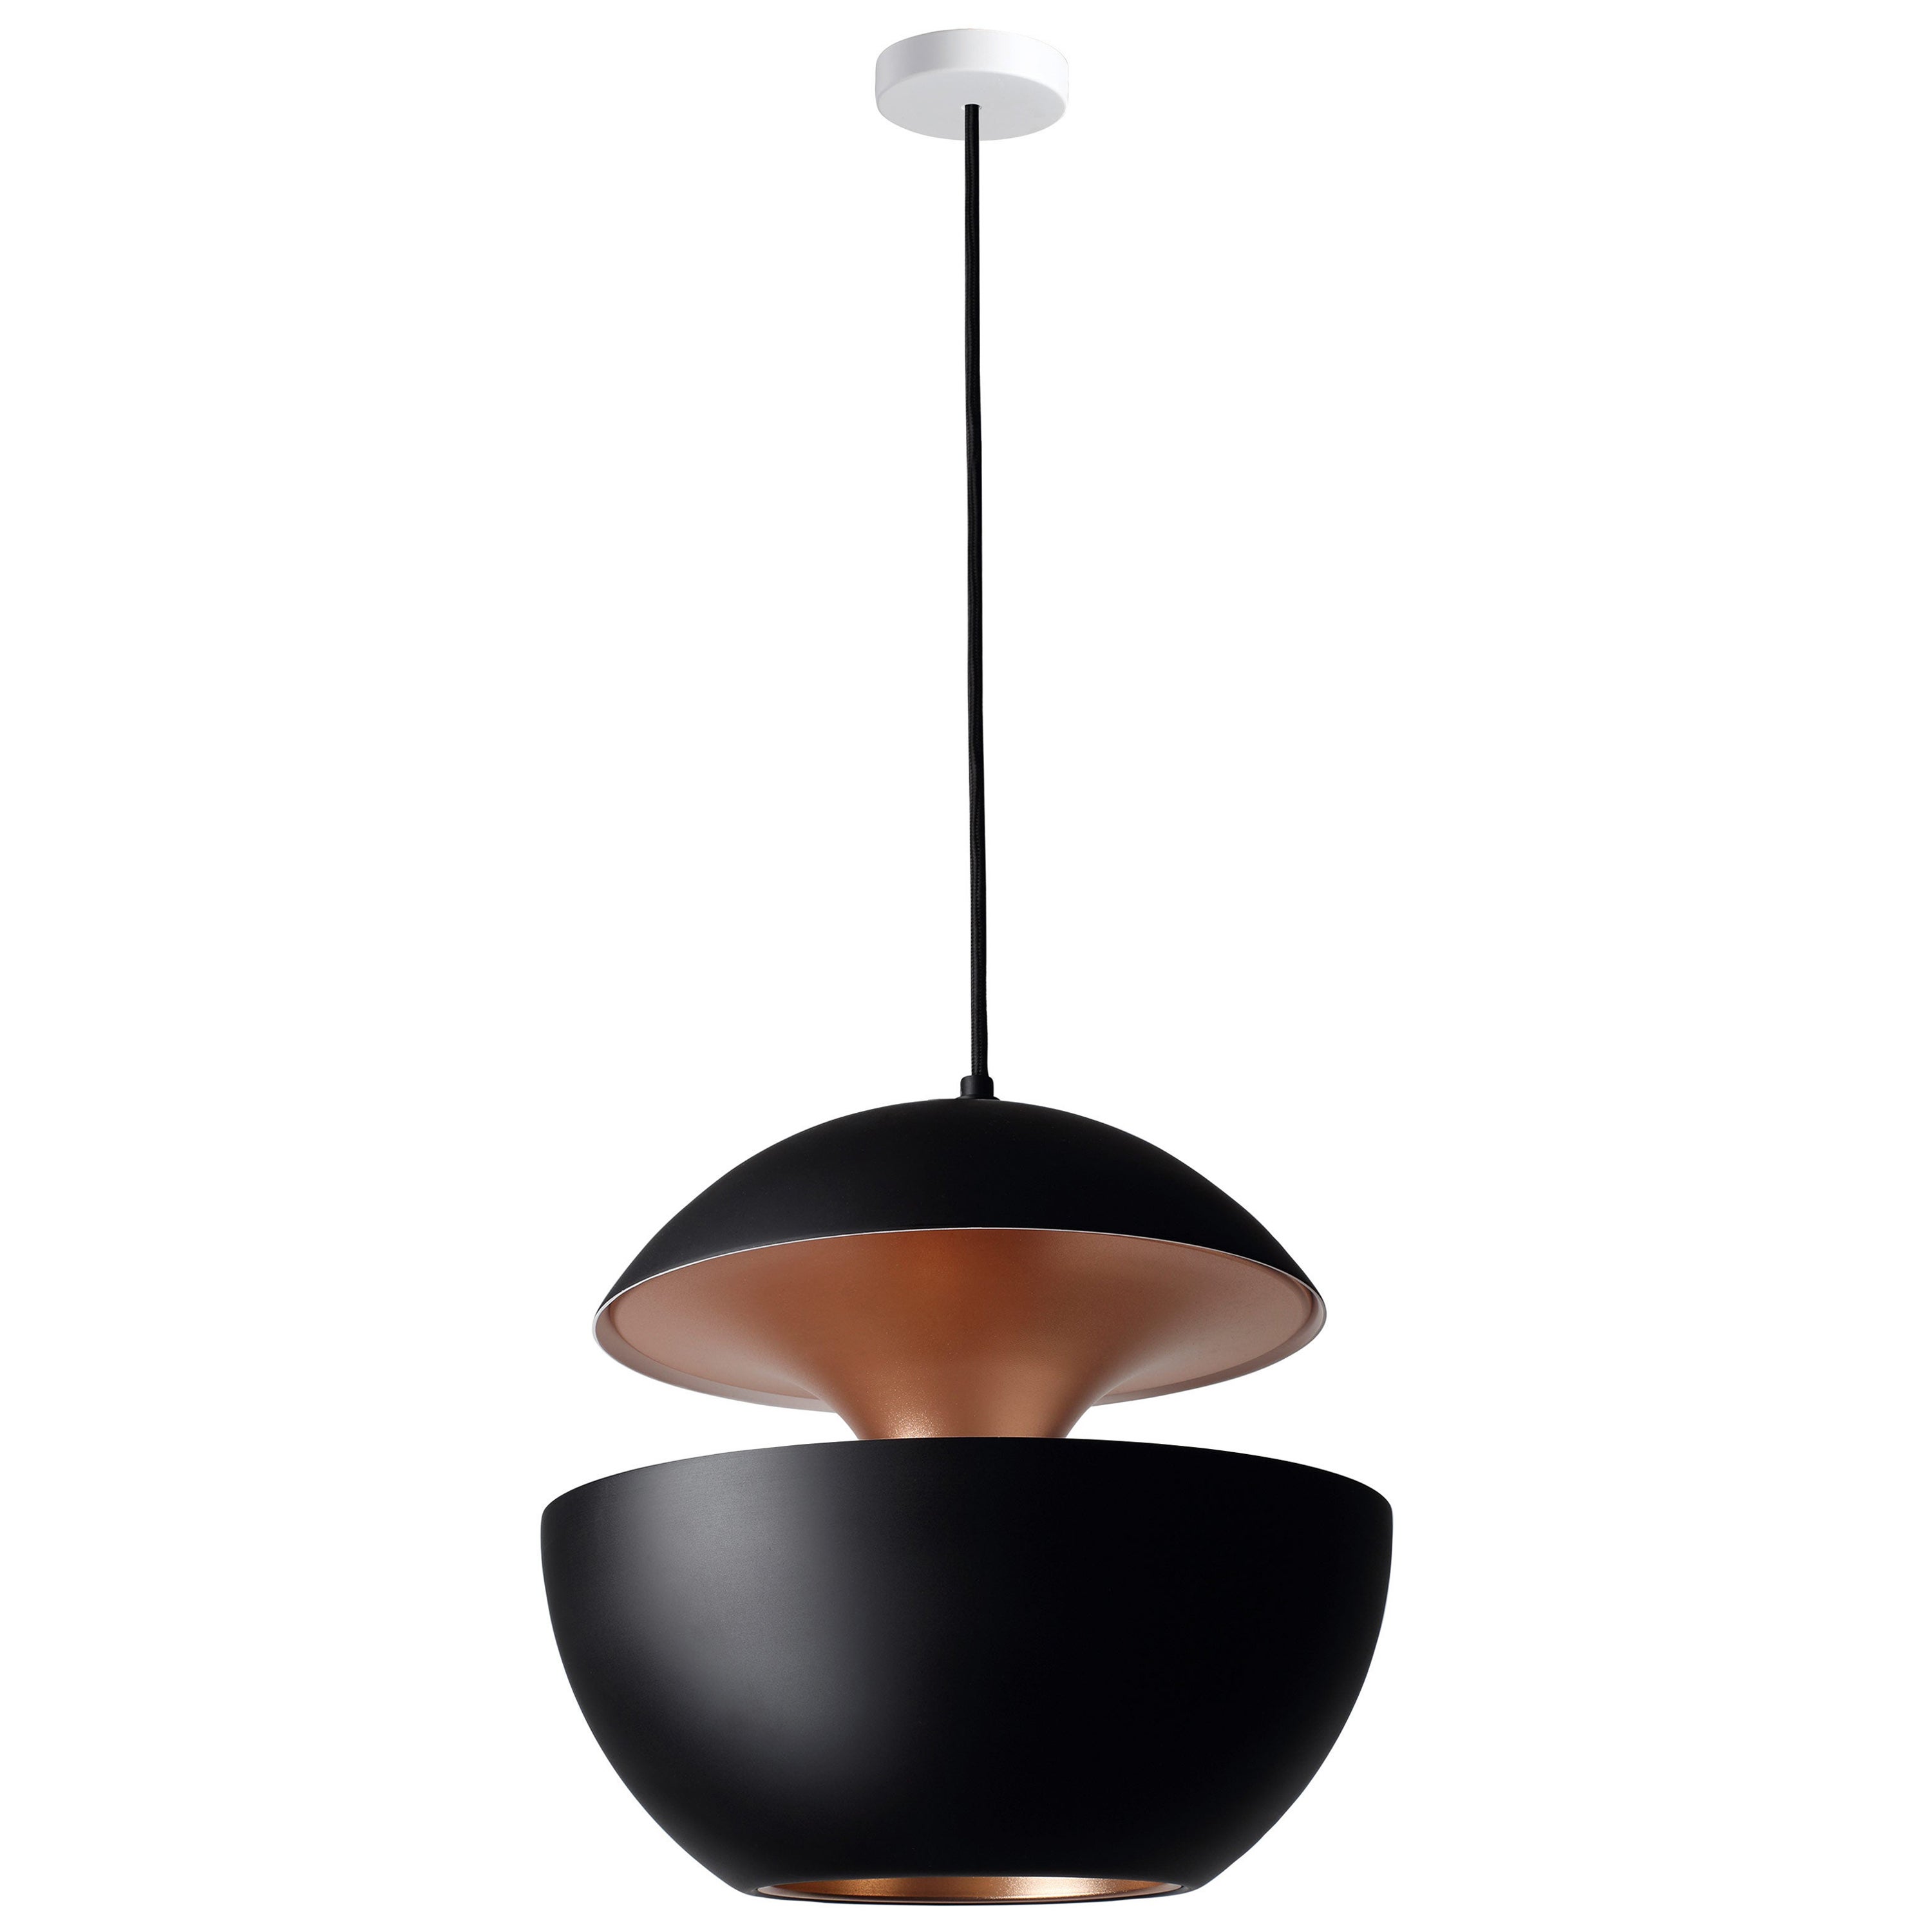 DCW Editions Here Comes the Sun 450 Pendant Lamp in Black Copper Aluminium For Sale